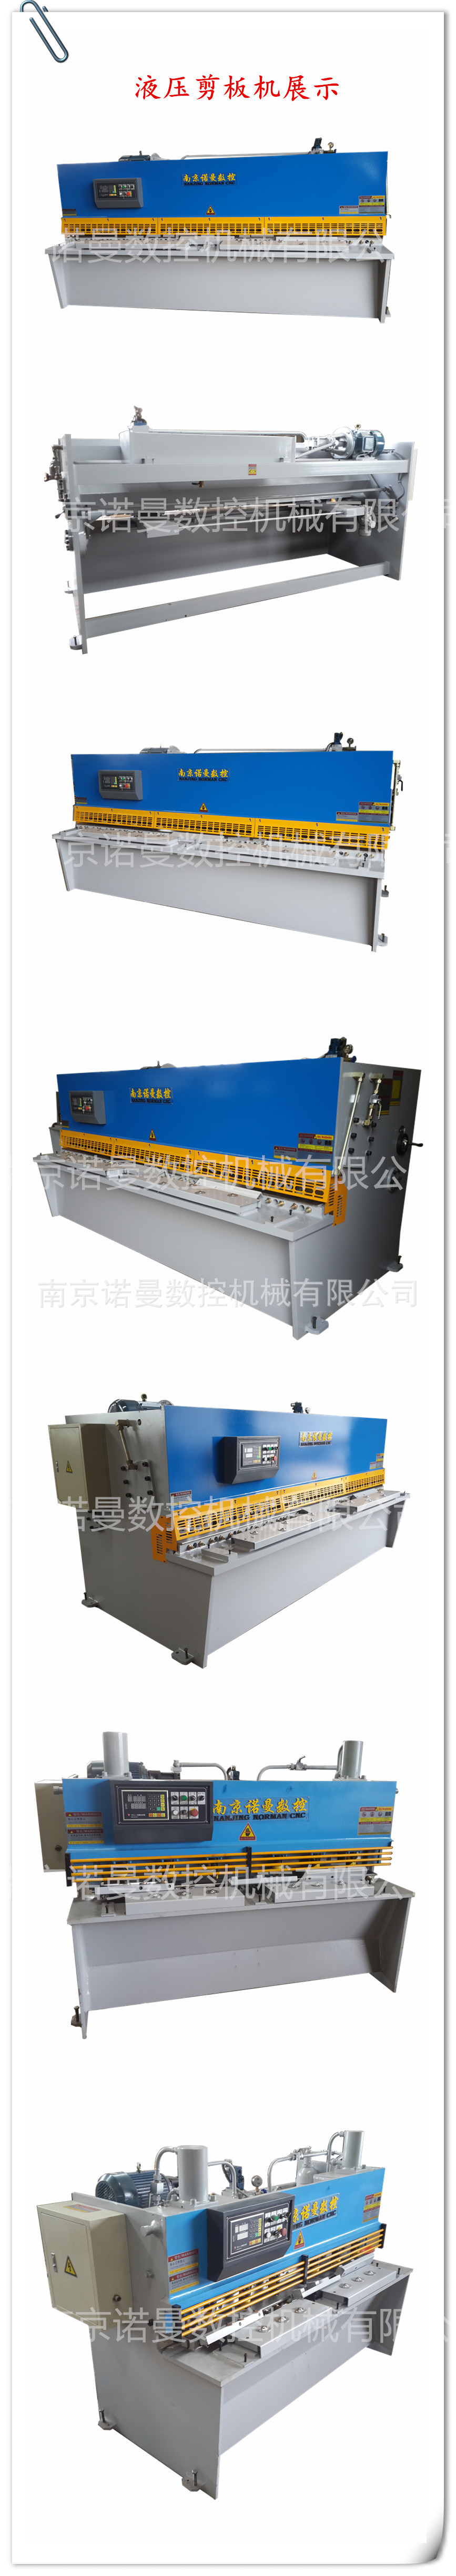 8*1600液压闸式剪板机价格 上海小型液压剪板机哪里有 液压裁板机示例图8